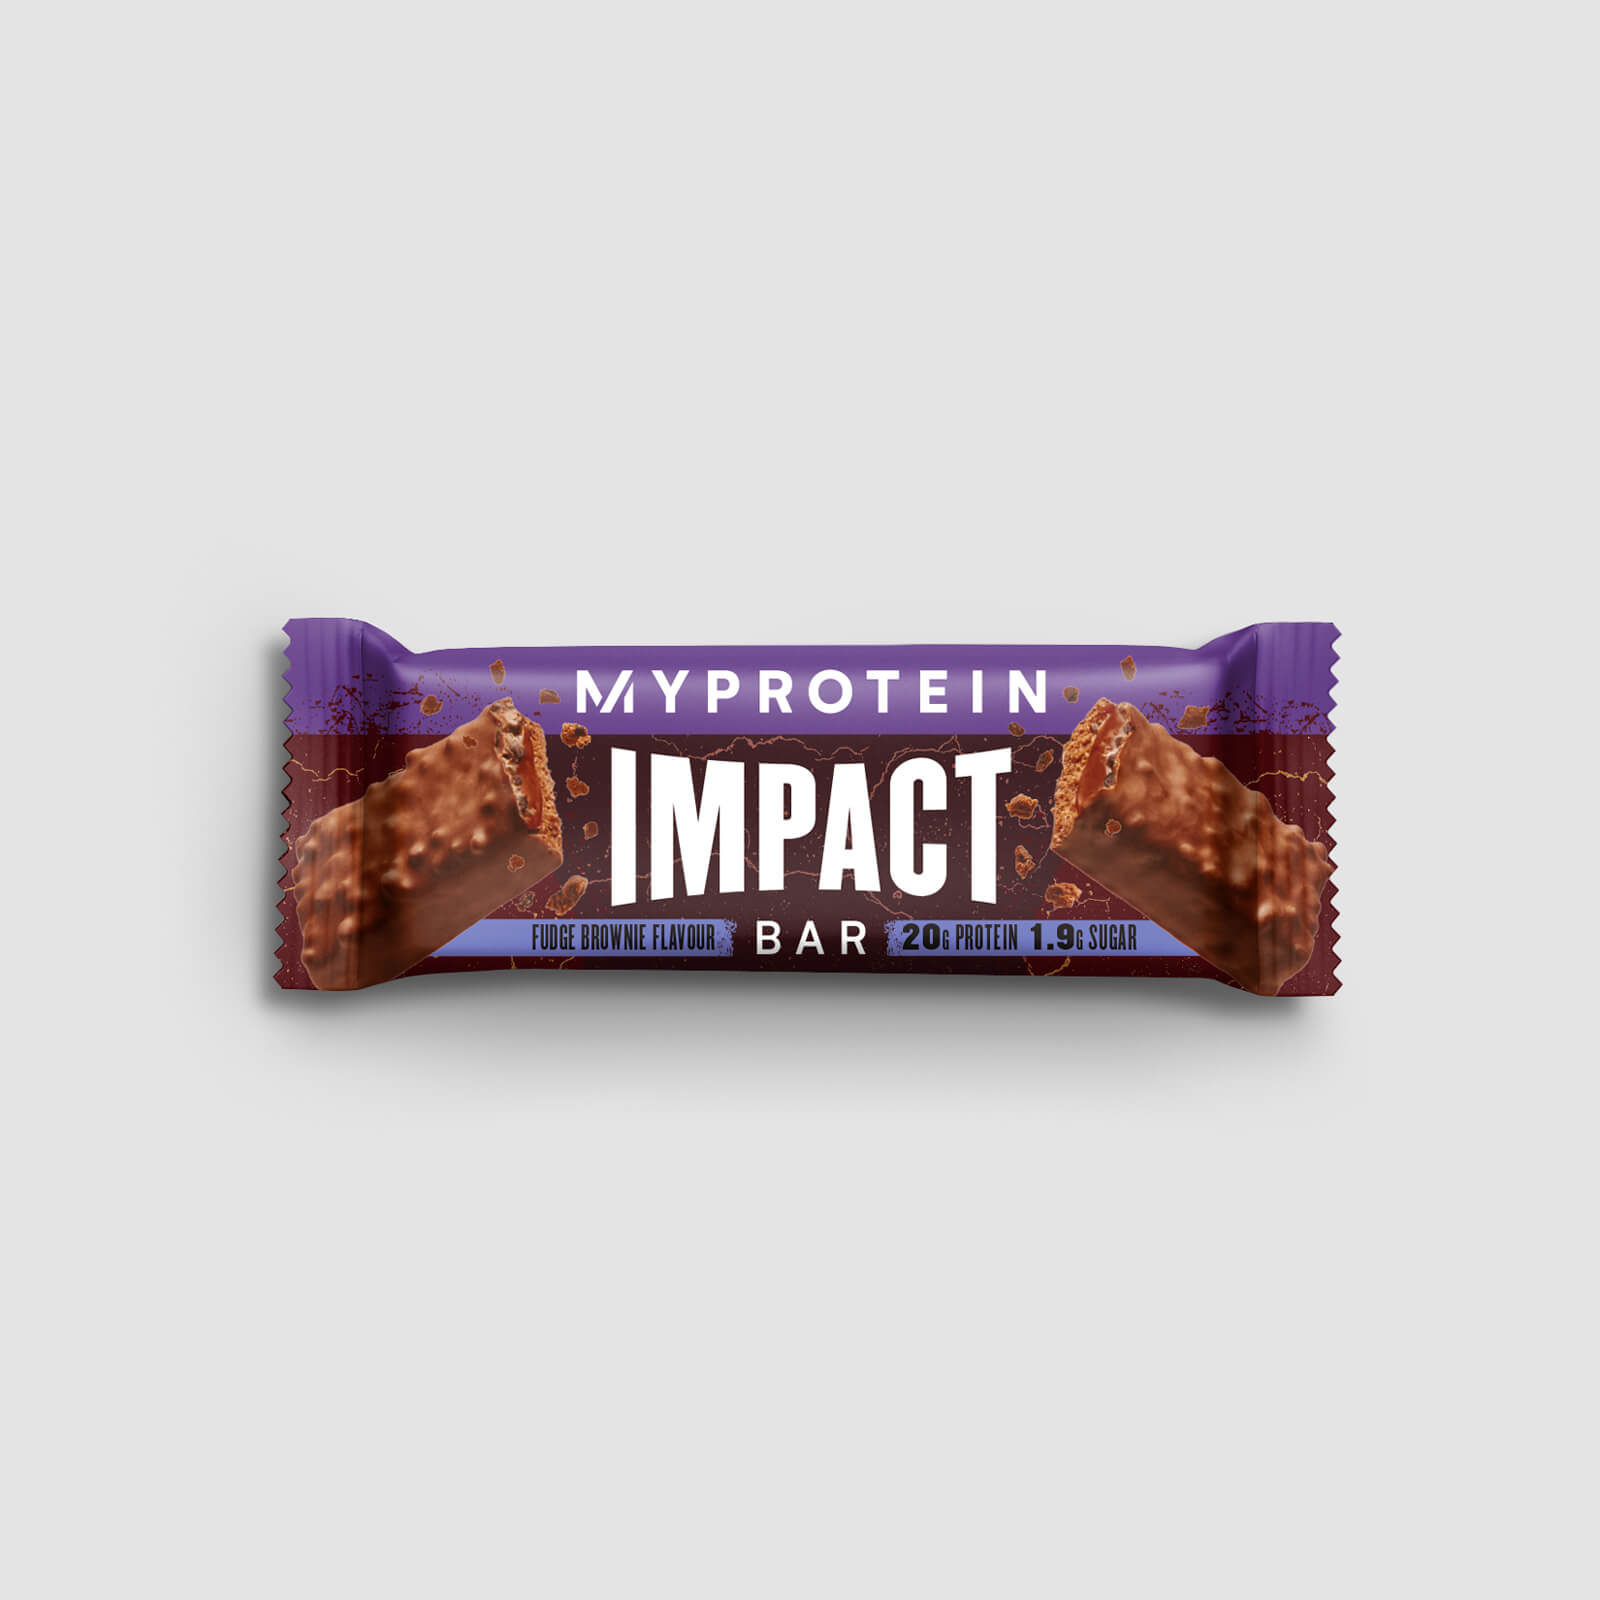 Myprotein Impact proteinbar - Fudge Brownie